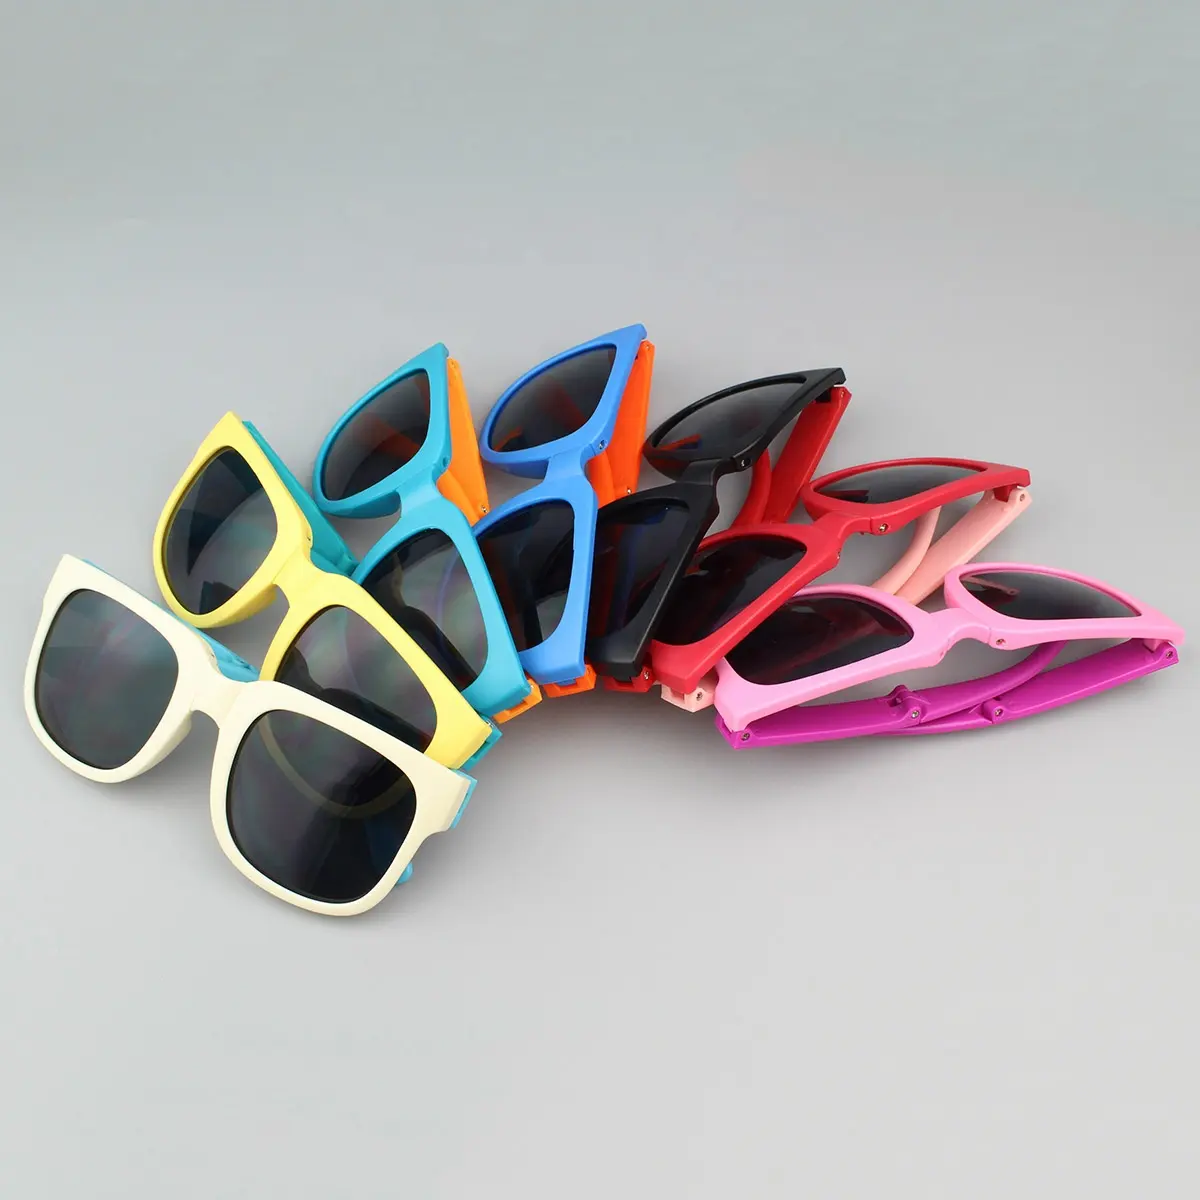 Óculos de sol dobráveis para crianças, óculos de sol coloridos e fofos para crianças, proteção UV, moda ao ar livre, novidade por atacado